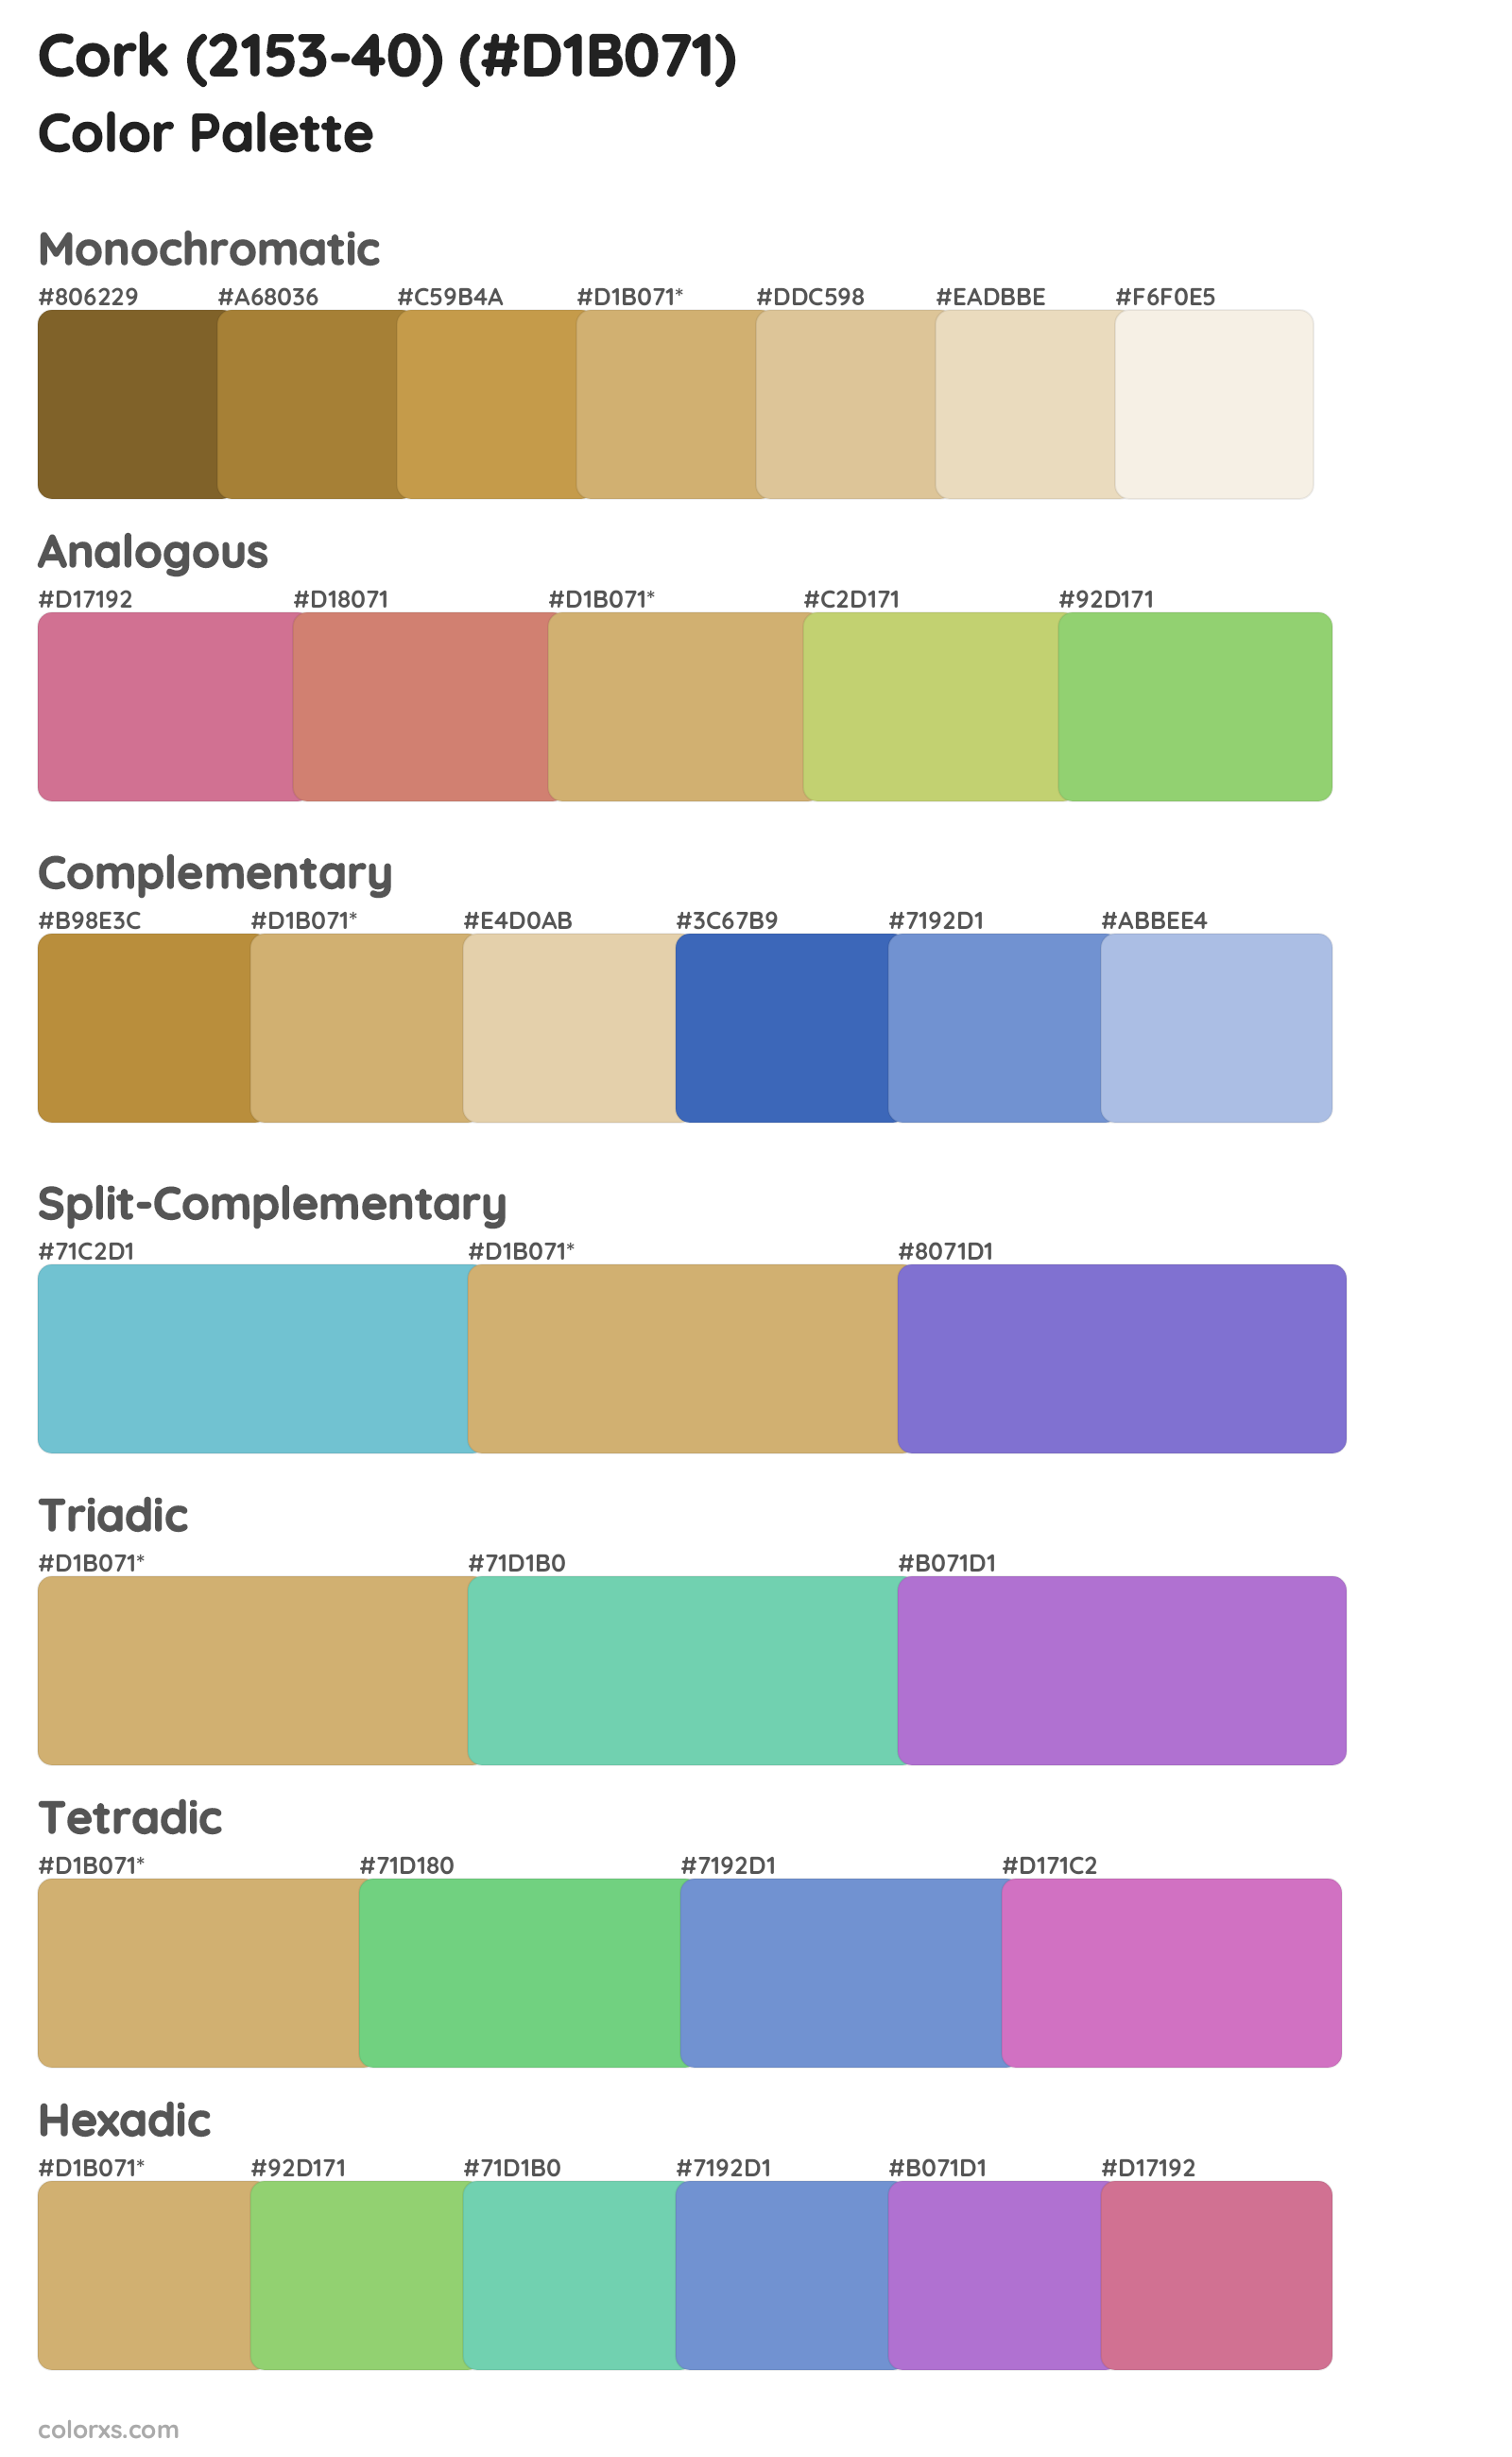 Cork (2153-40) Color Scheme Palettes